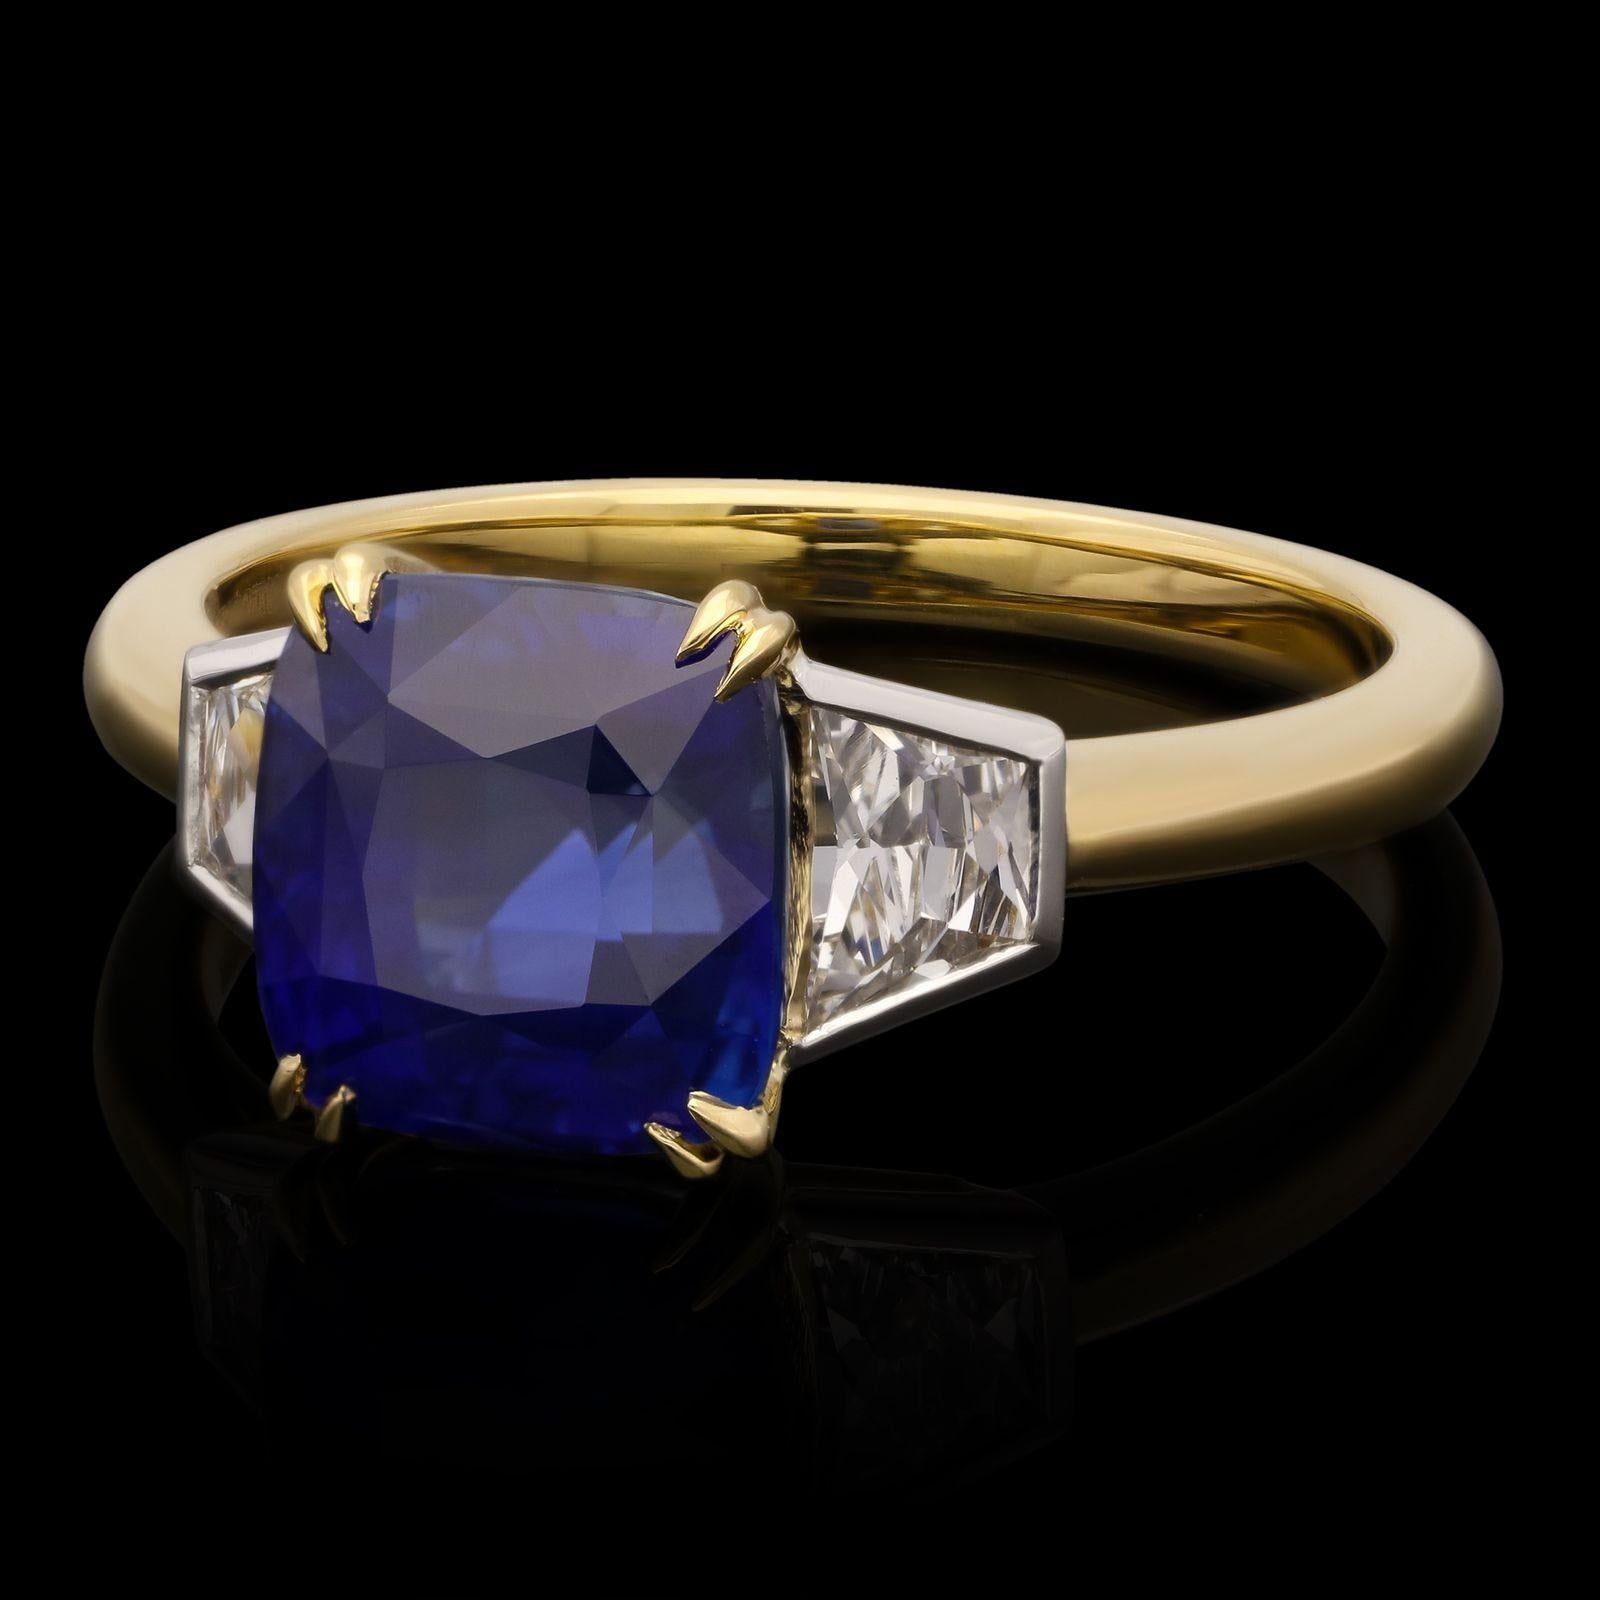 Magnifique bague en saphir et diamant de Hancocks, centrée sur un saphir de forme coussin d'un bleu intense et riche pesant 3,54cts, serti à griffes en or jaune 18ct entre des épaulements sertis de diamants de taille française de forme trapézoïdale